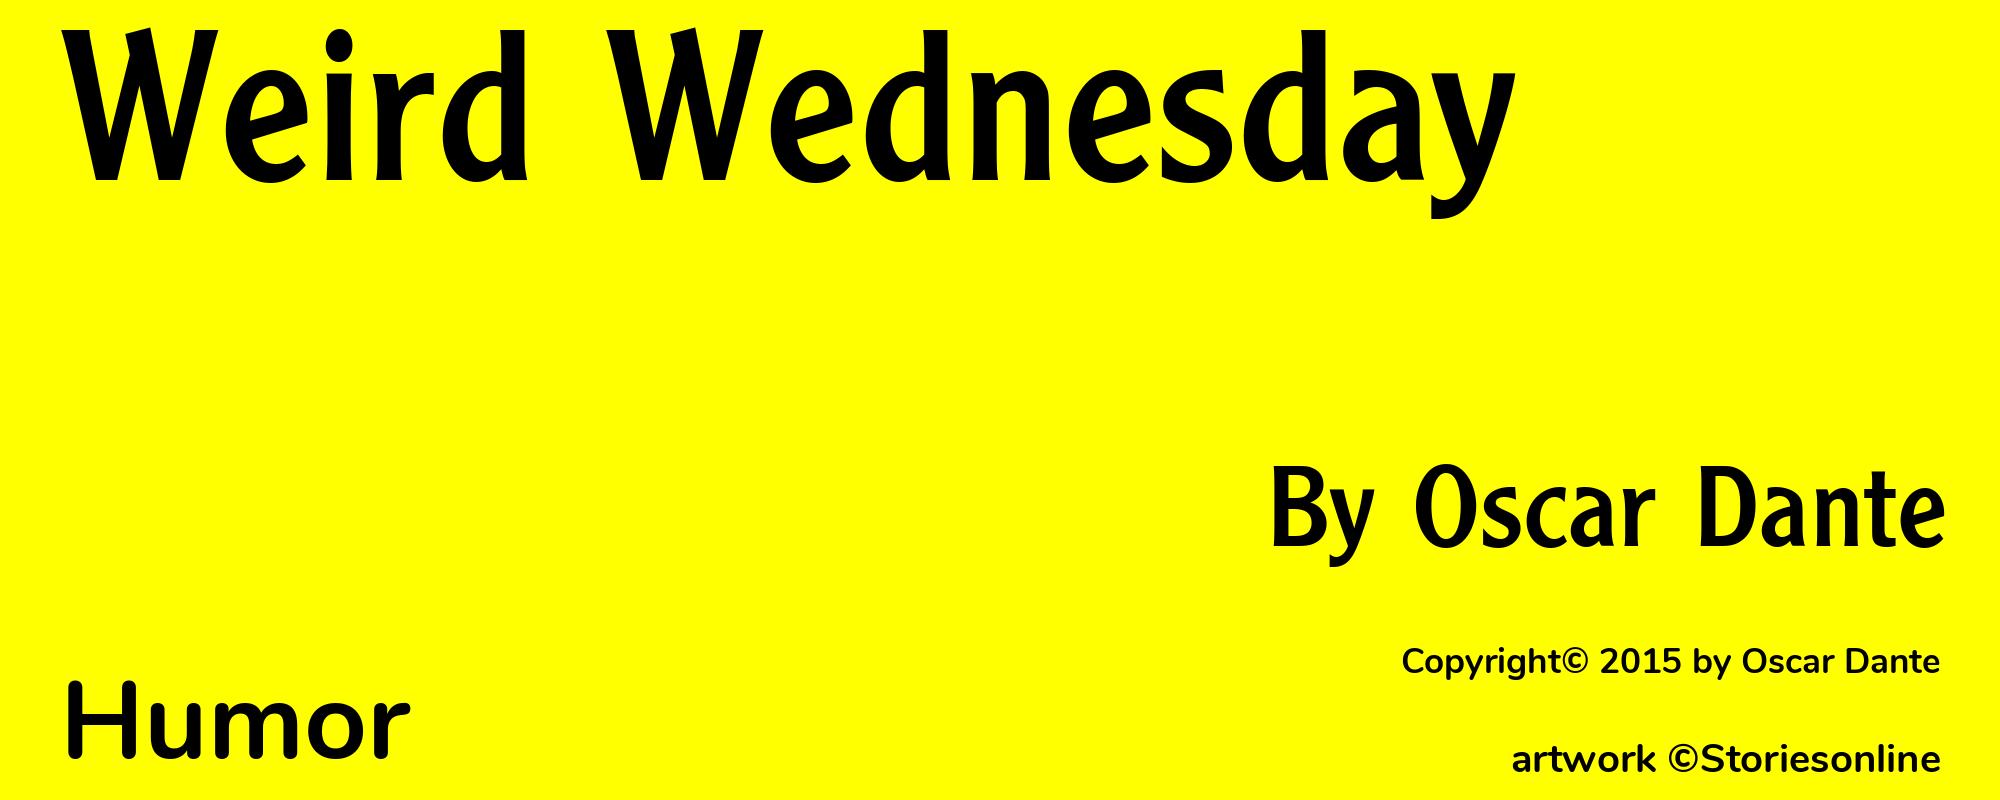 Weird Wednesday - Cover